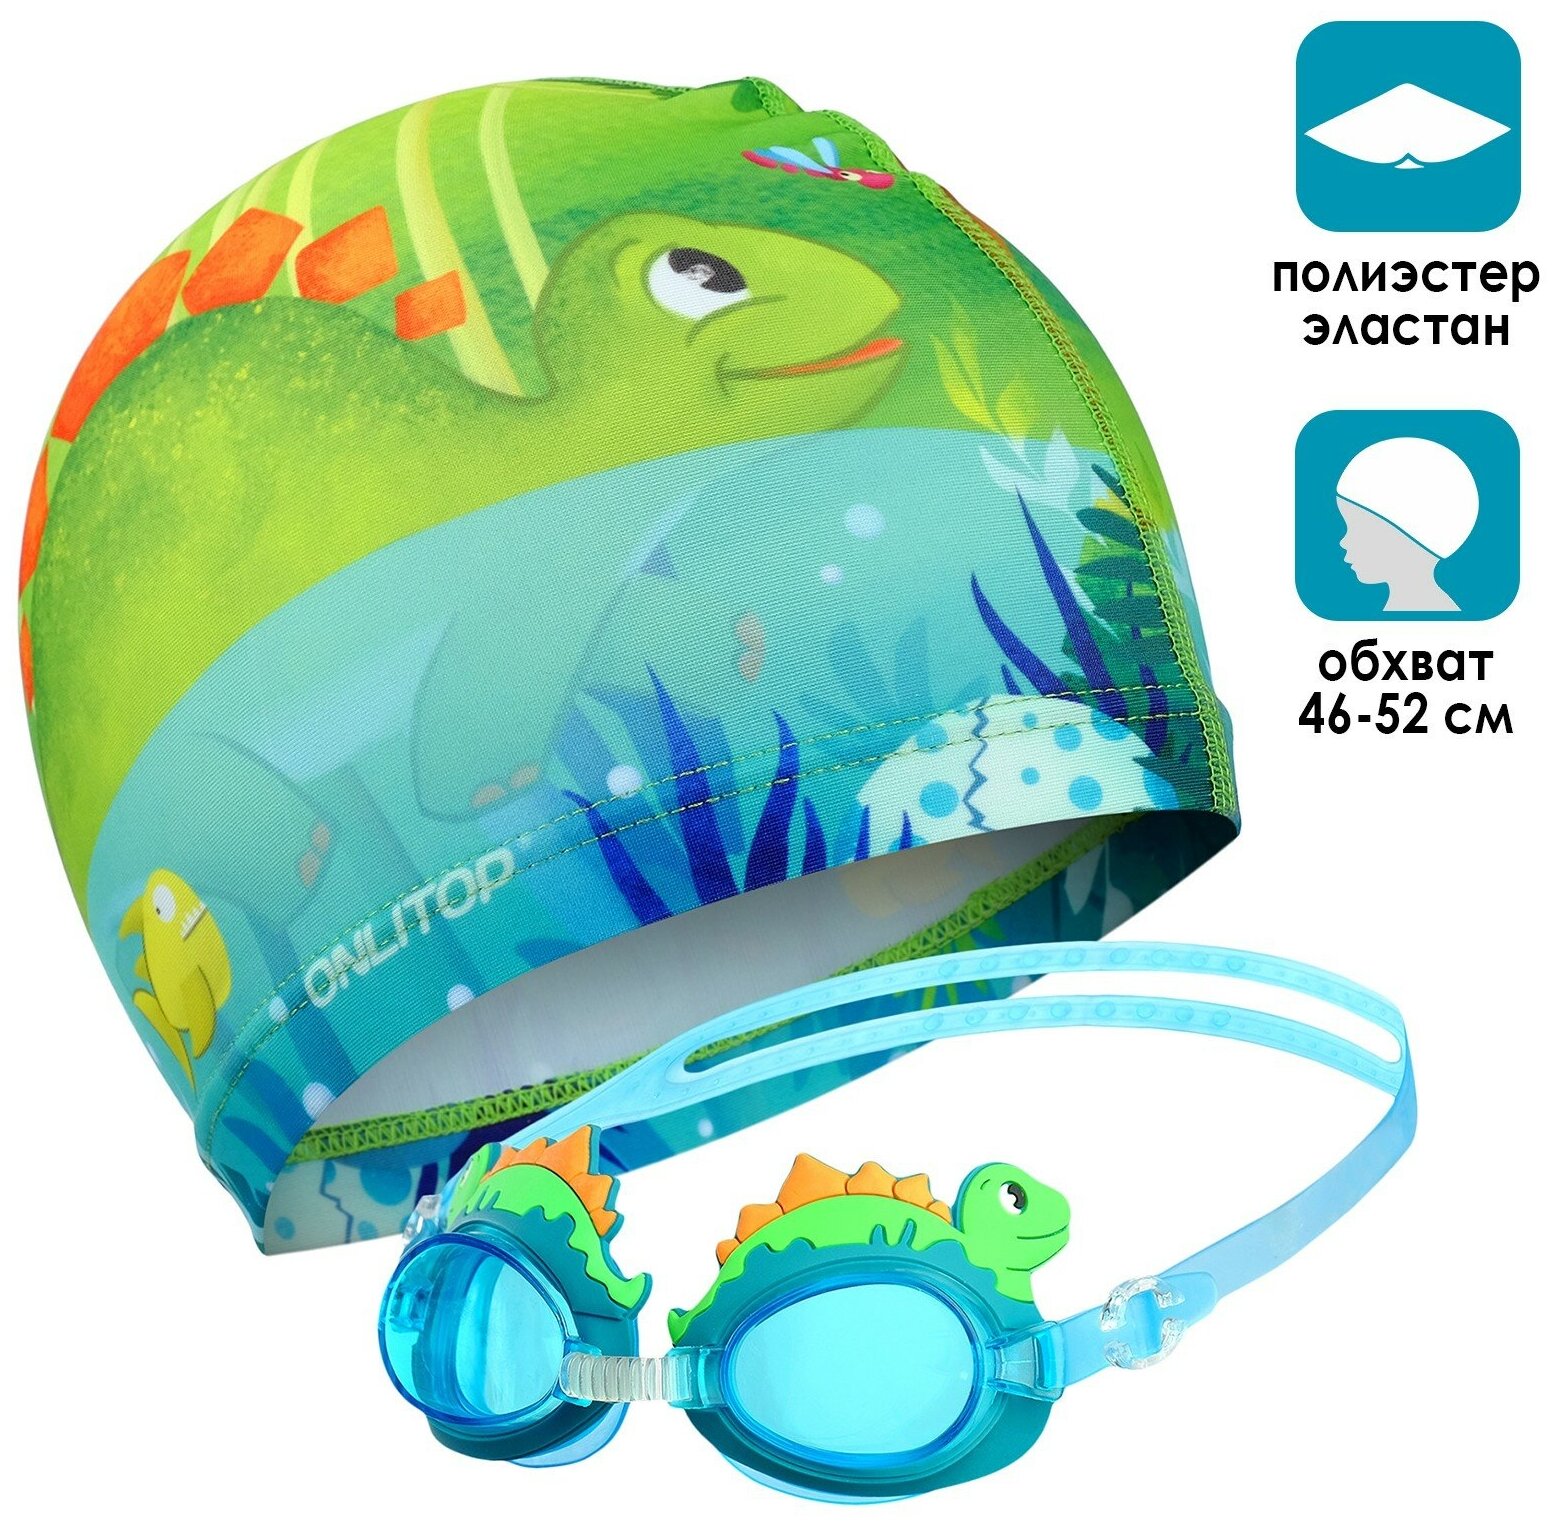 Набор детский ONLYTOP «Динозаврик», шапочка, очки для плавания, мешок, цвет голубой, зеленый